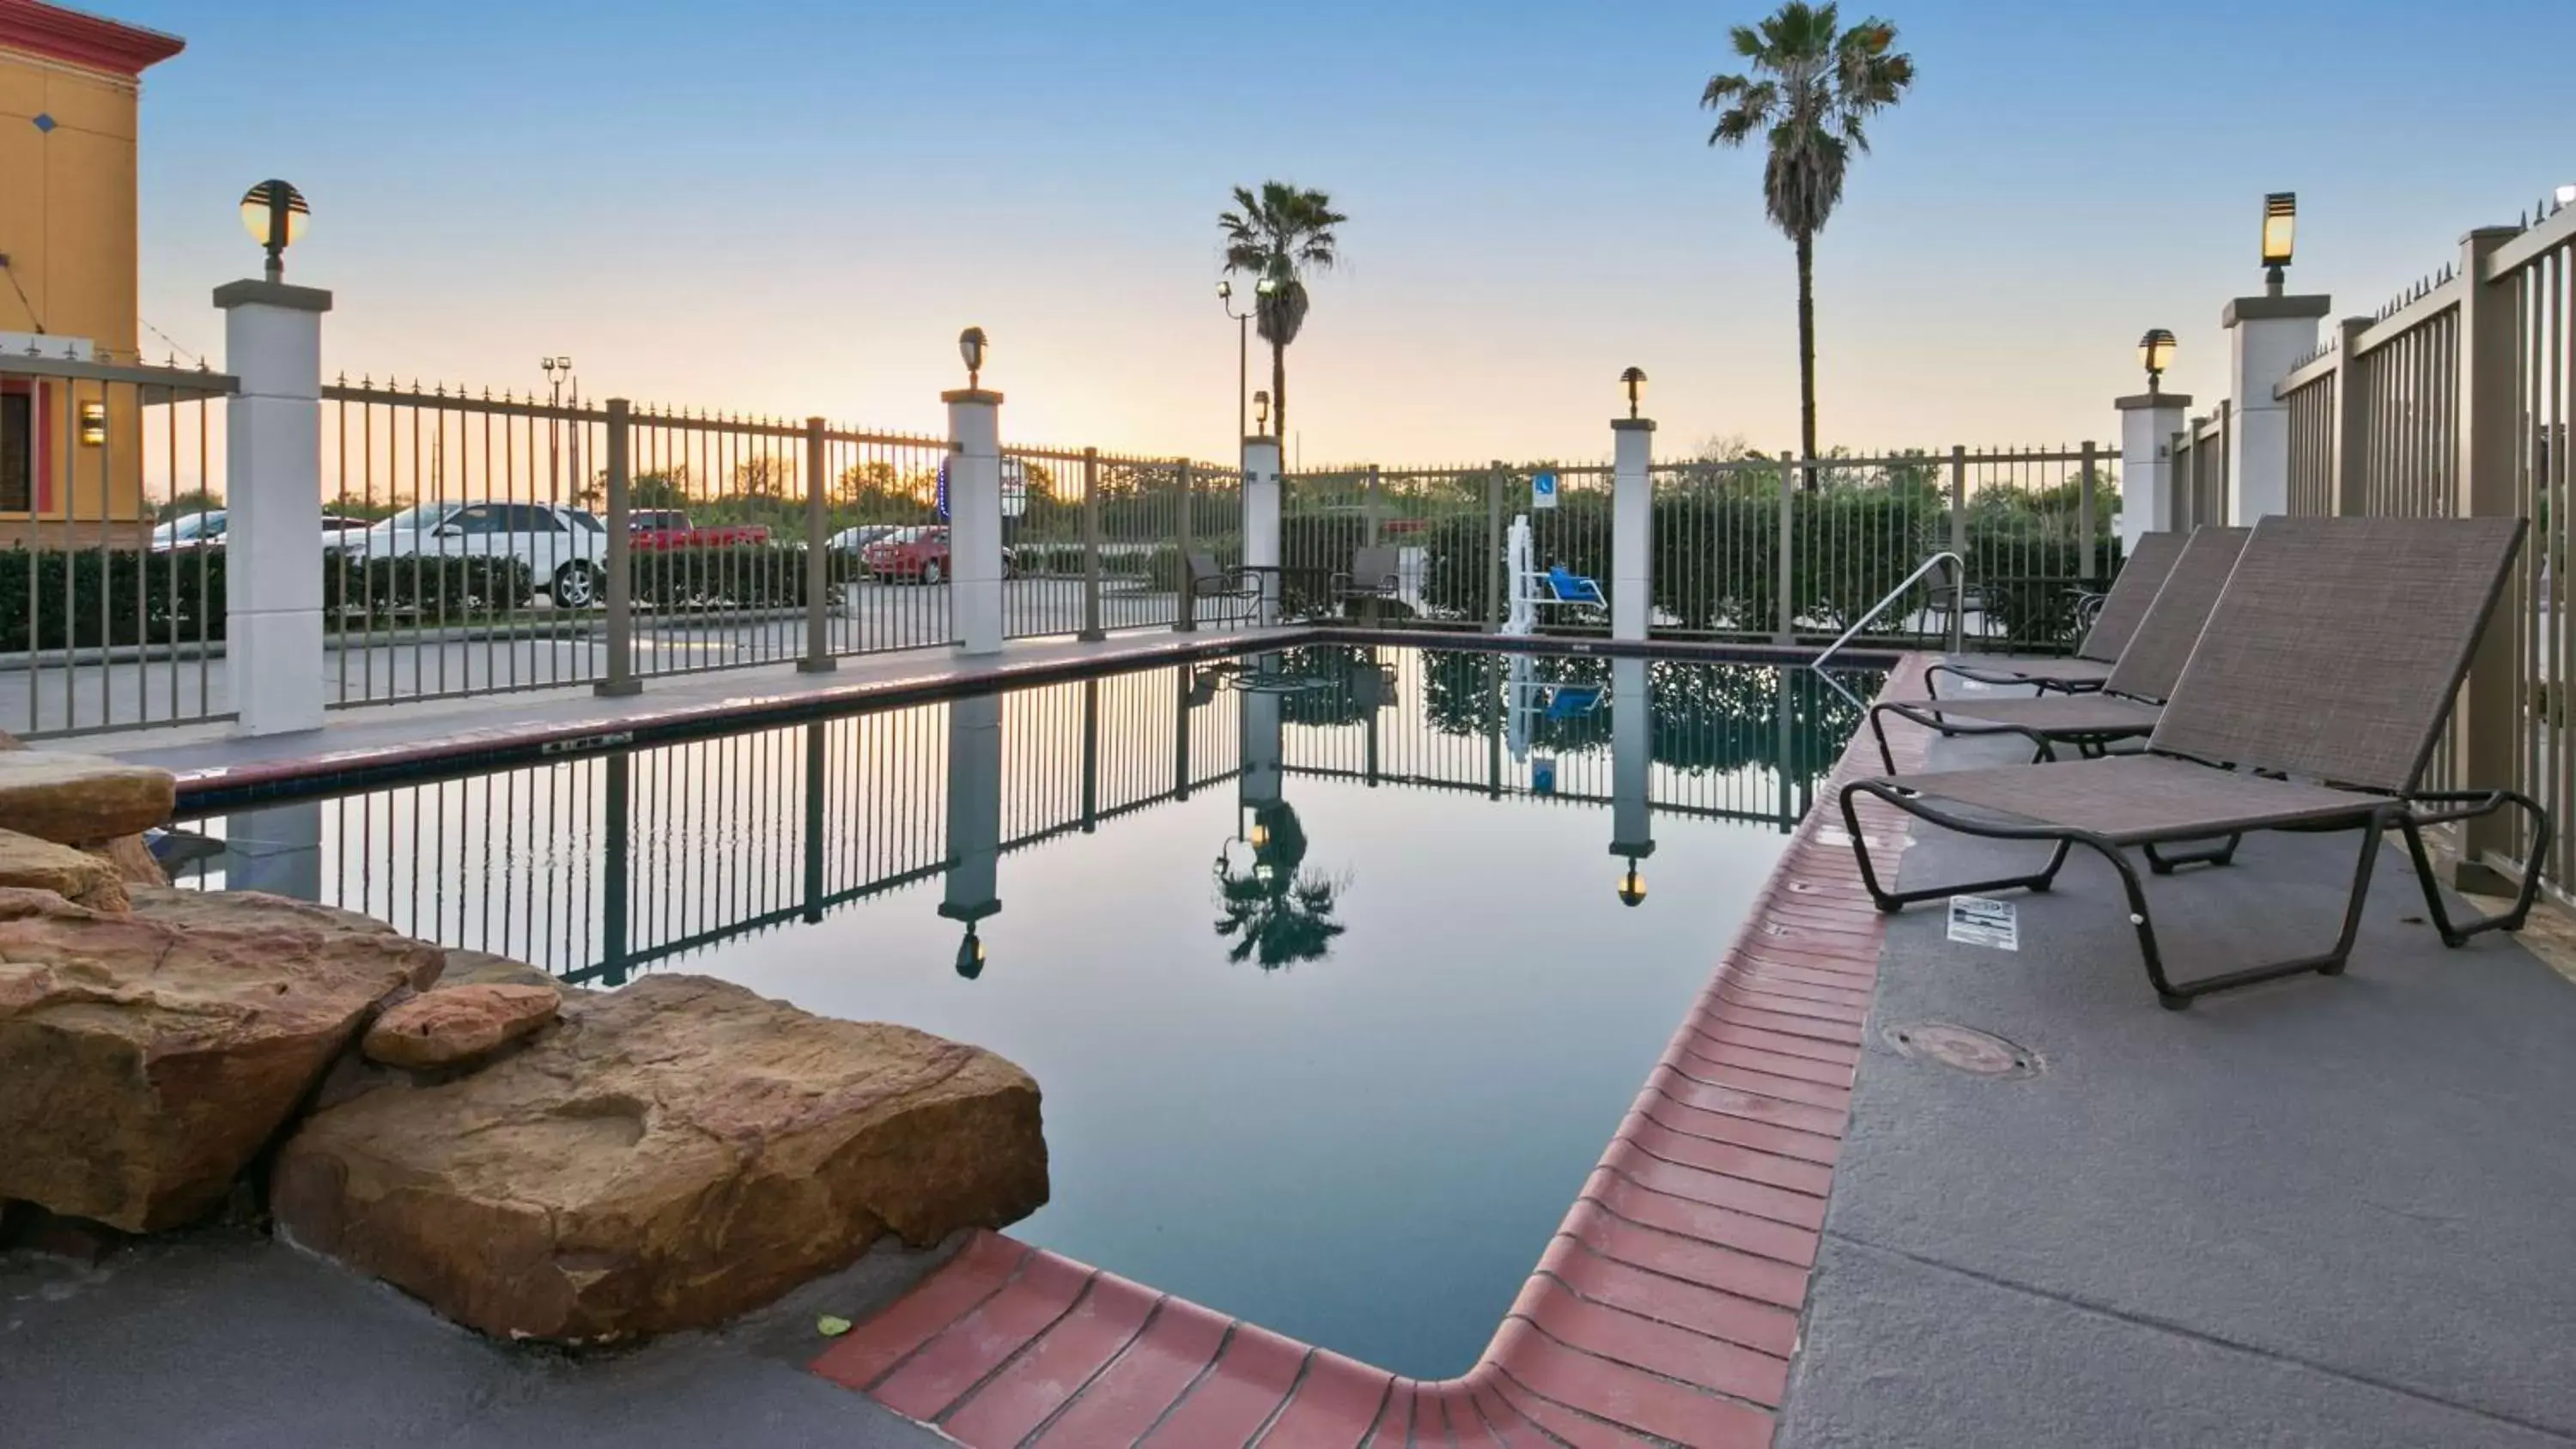 On site, Swimming Pool in Best Western Dayton Inn & Suites